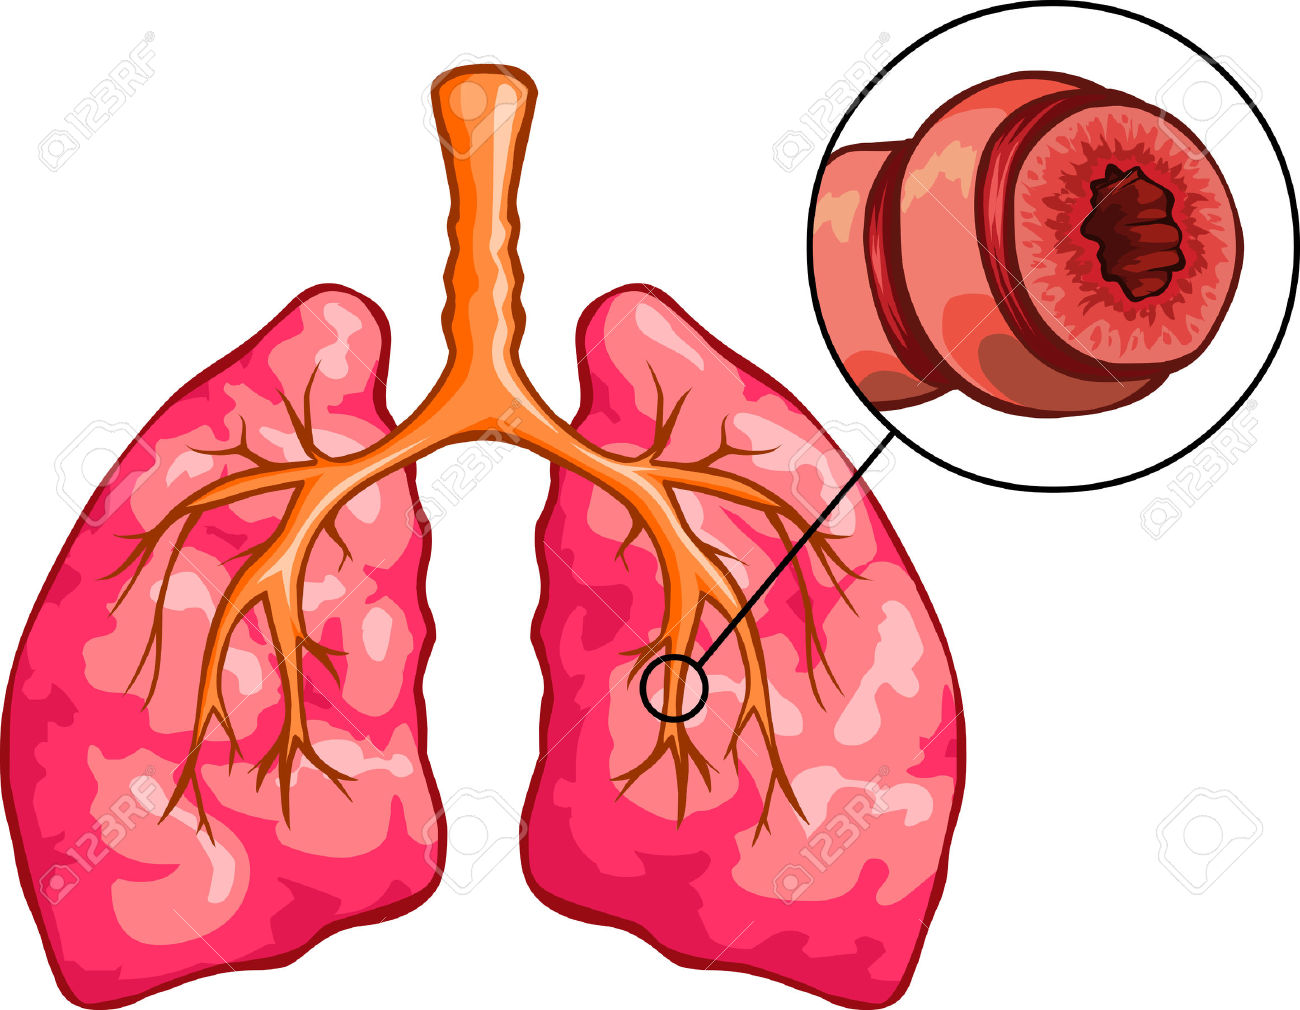 Бронхит 2024. Бронхоэктатическая астма. Лёгкие человека с бронхиальной астмой. Бронхиальная астма рисунок. Здоровые легкие и легкие астматика.